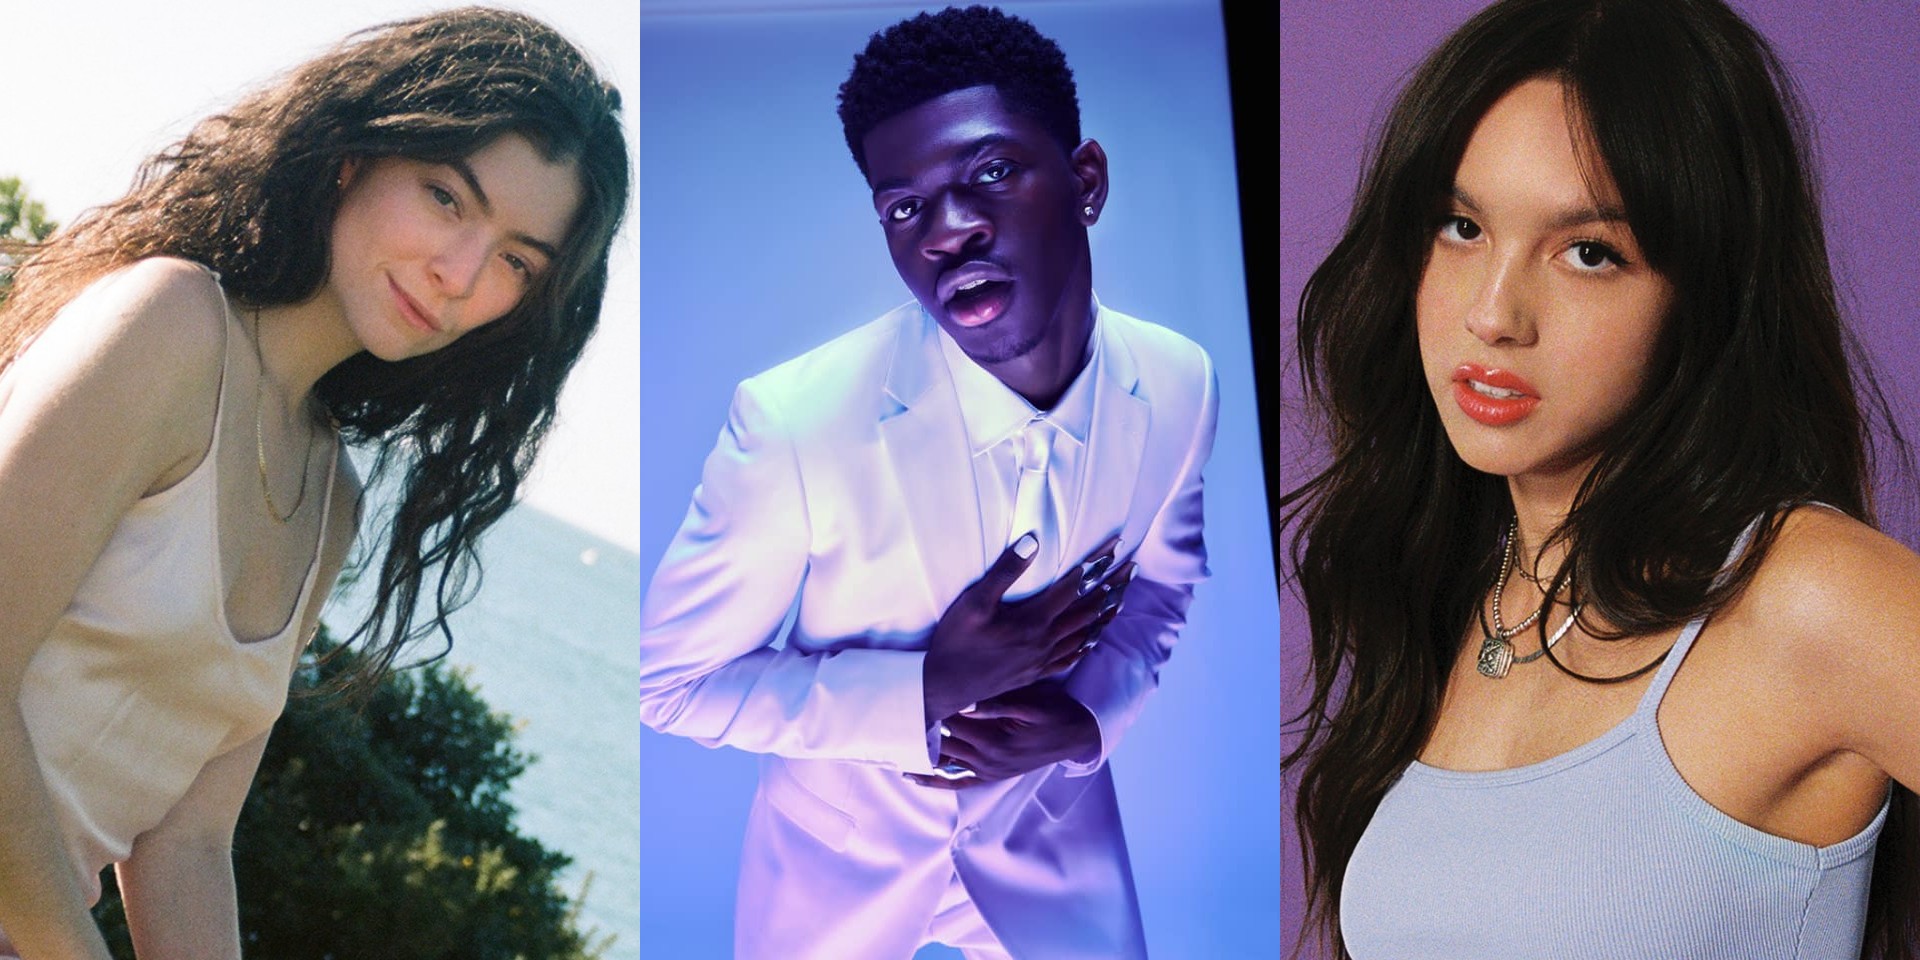 Lorde, Olivia Rodrigo, Lil Nas X, and more to perform at the 2021 MTV VMAs